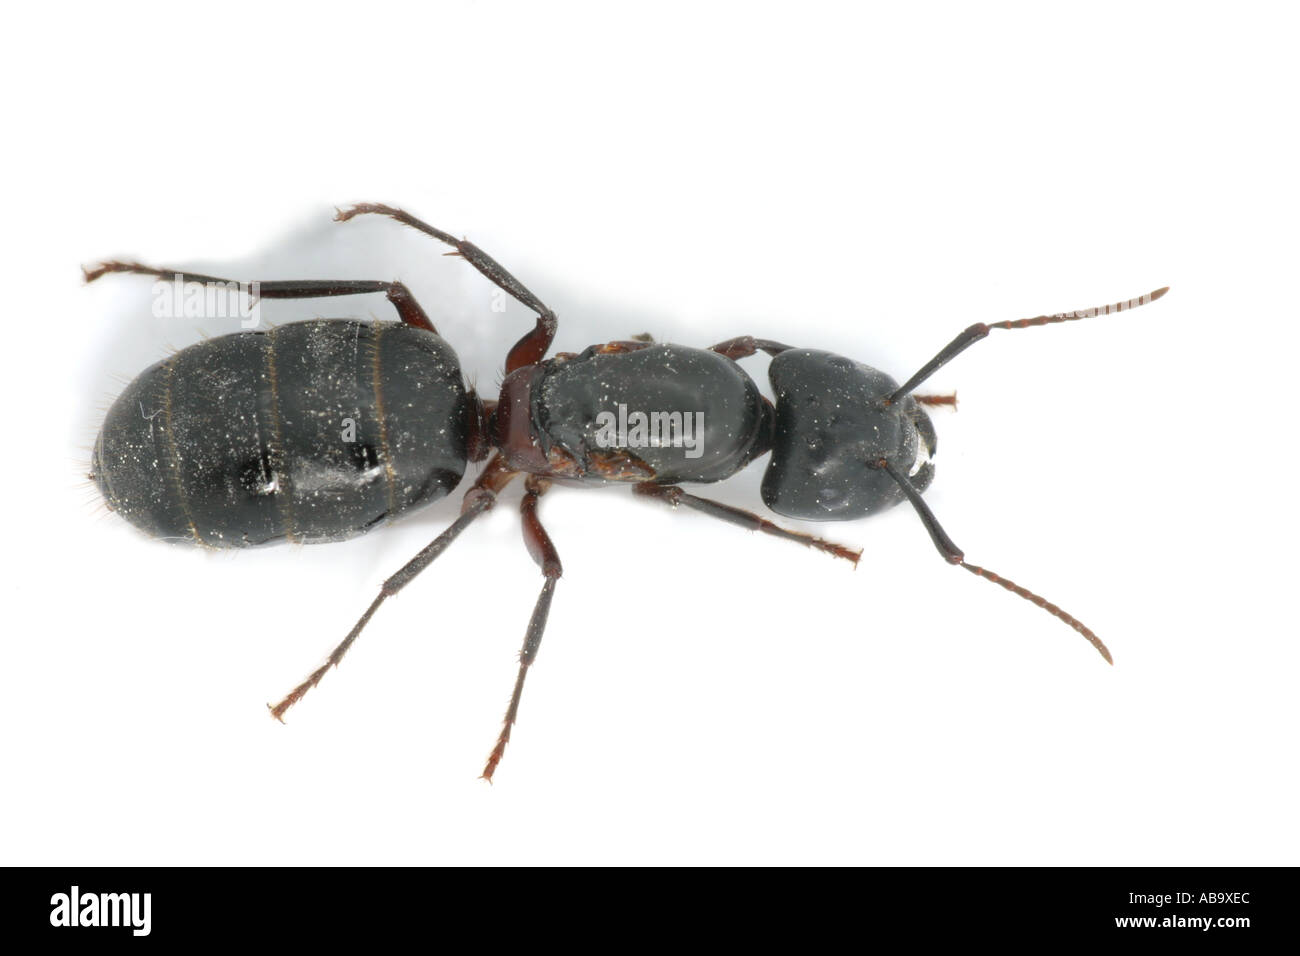 Close up of carpenter ant, Camponotus herculeanus Stock Photo